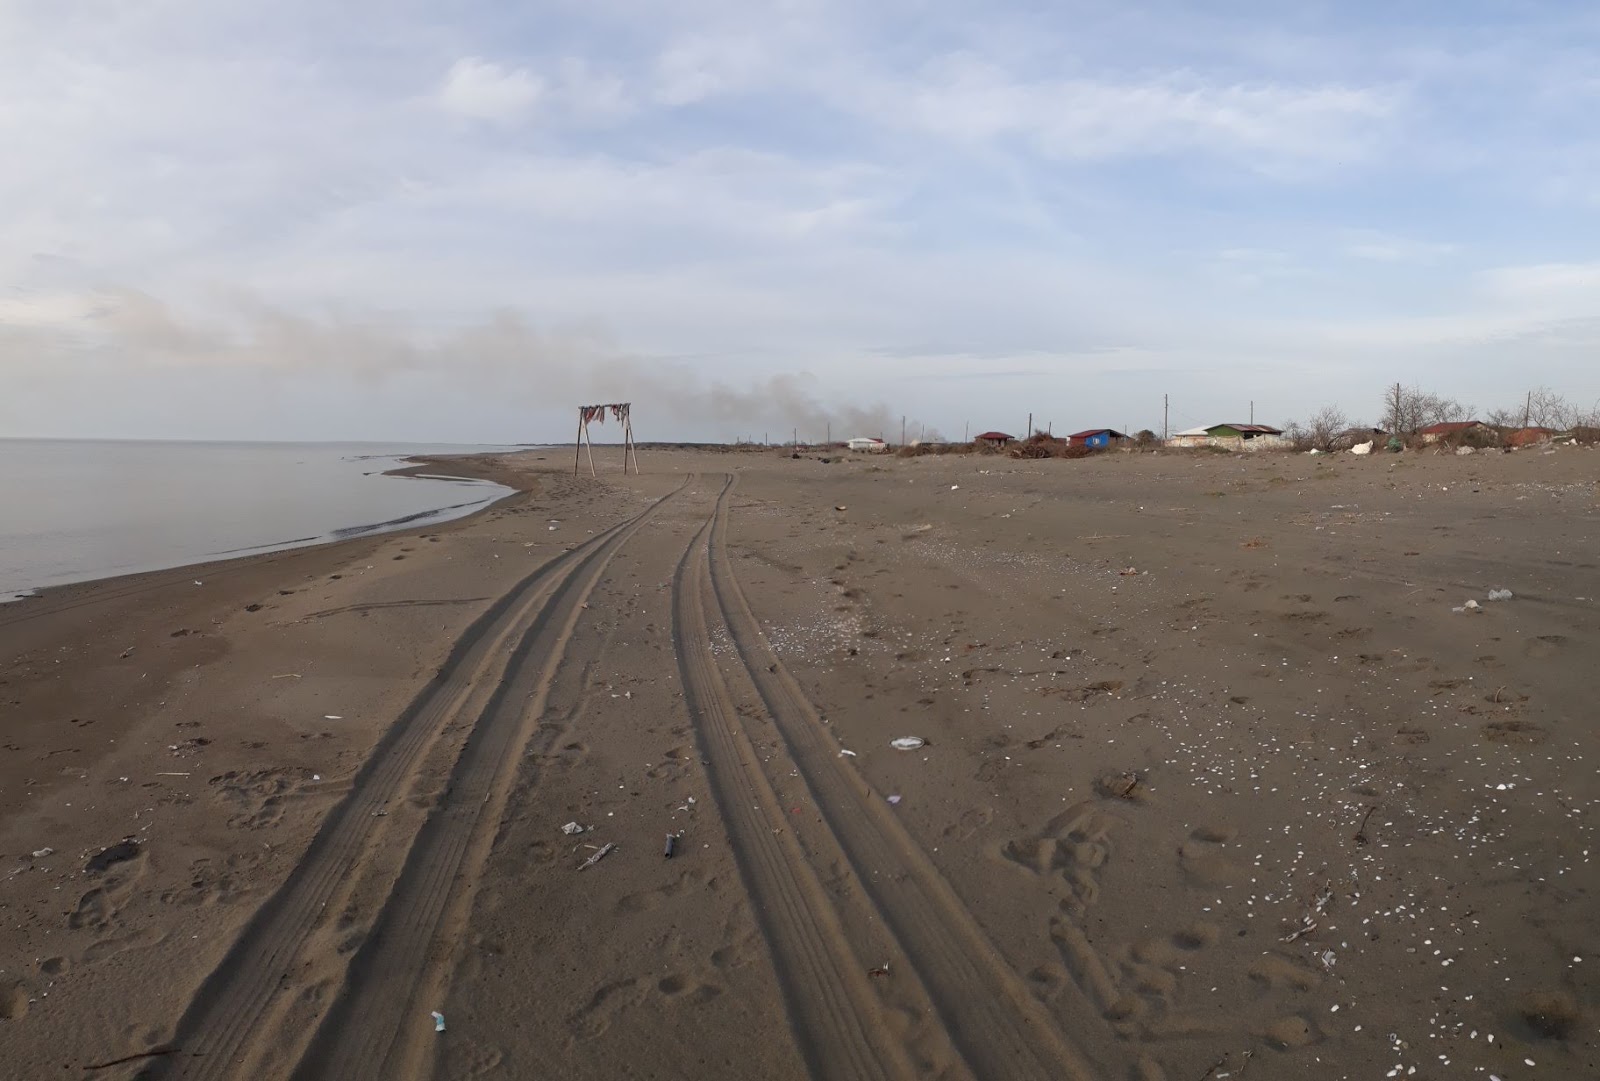 Calti Plaji'in fotoğrafı gri kum yüzey ile